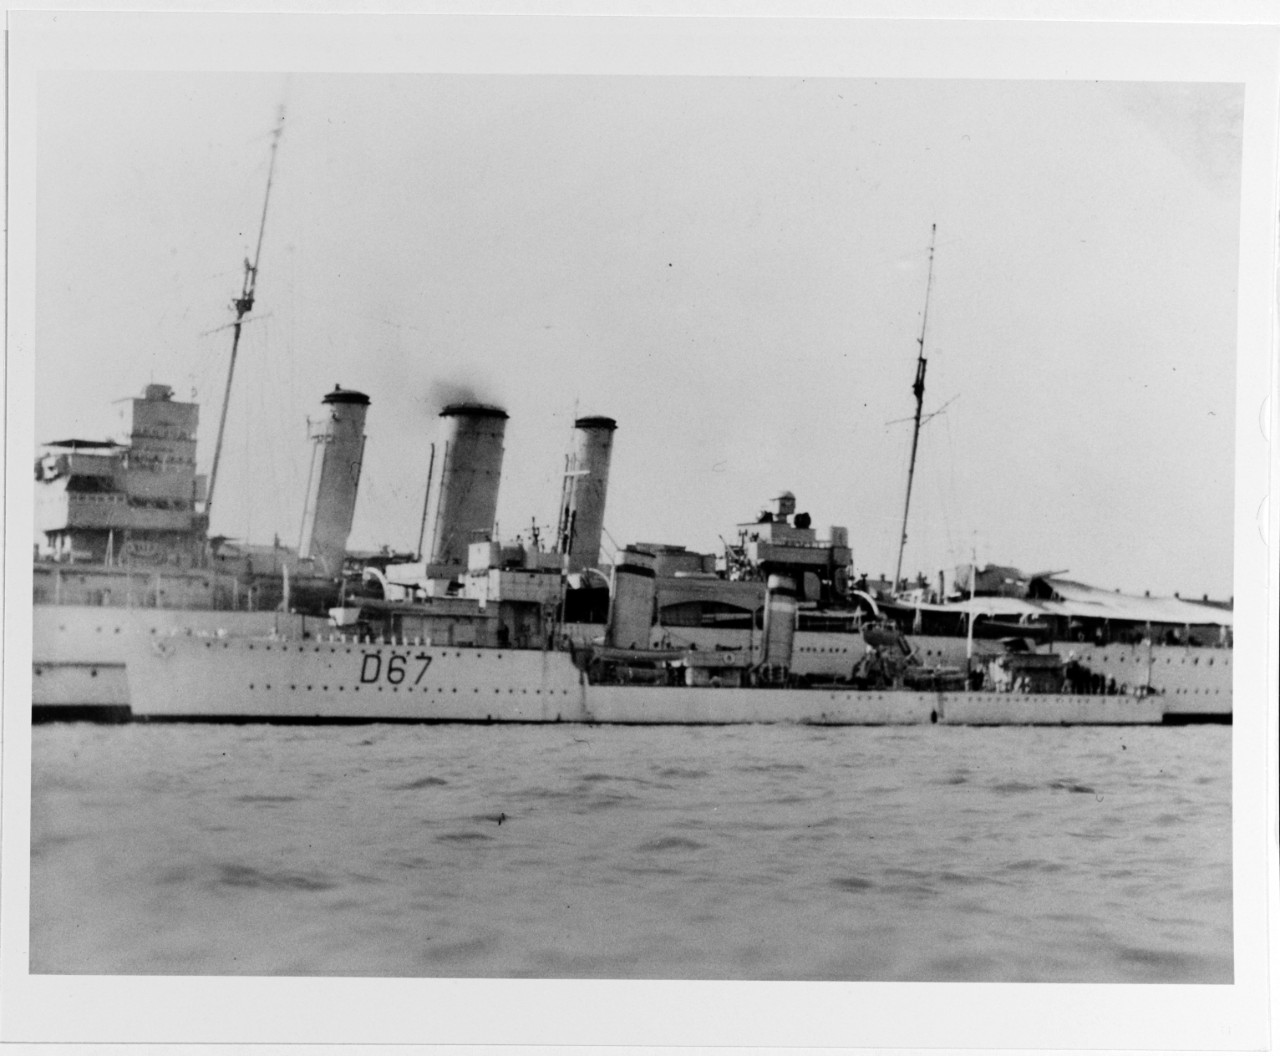 WISHART (British destroyer, 1919-1945)